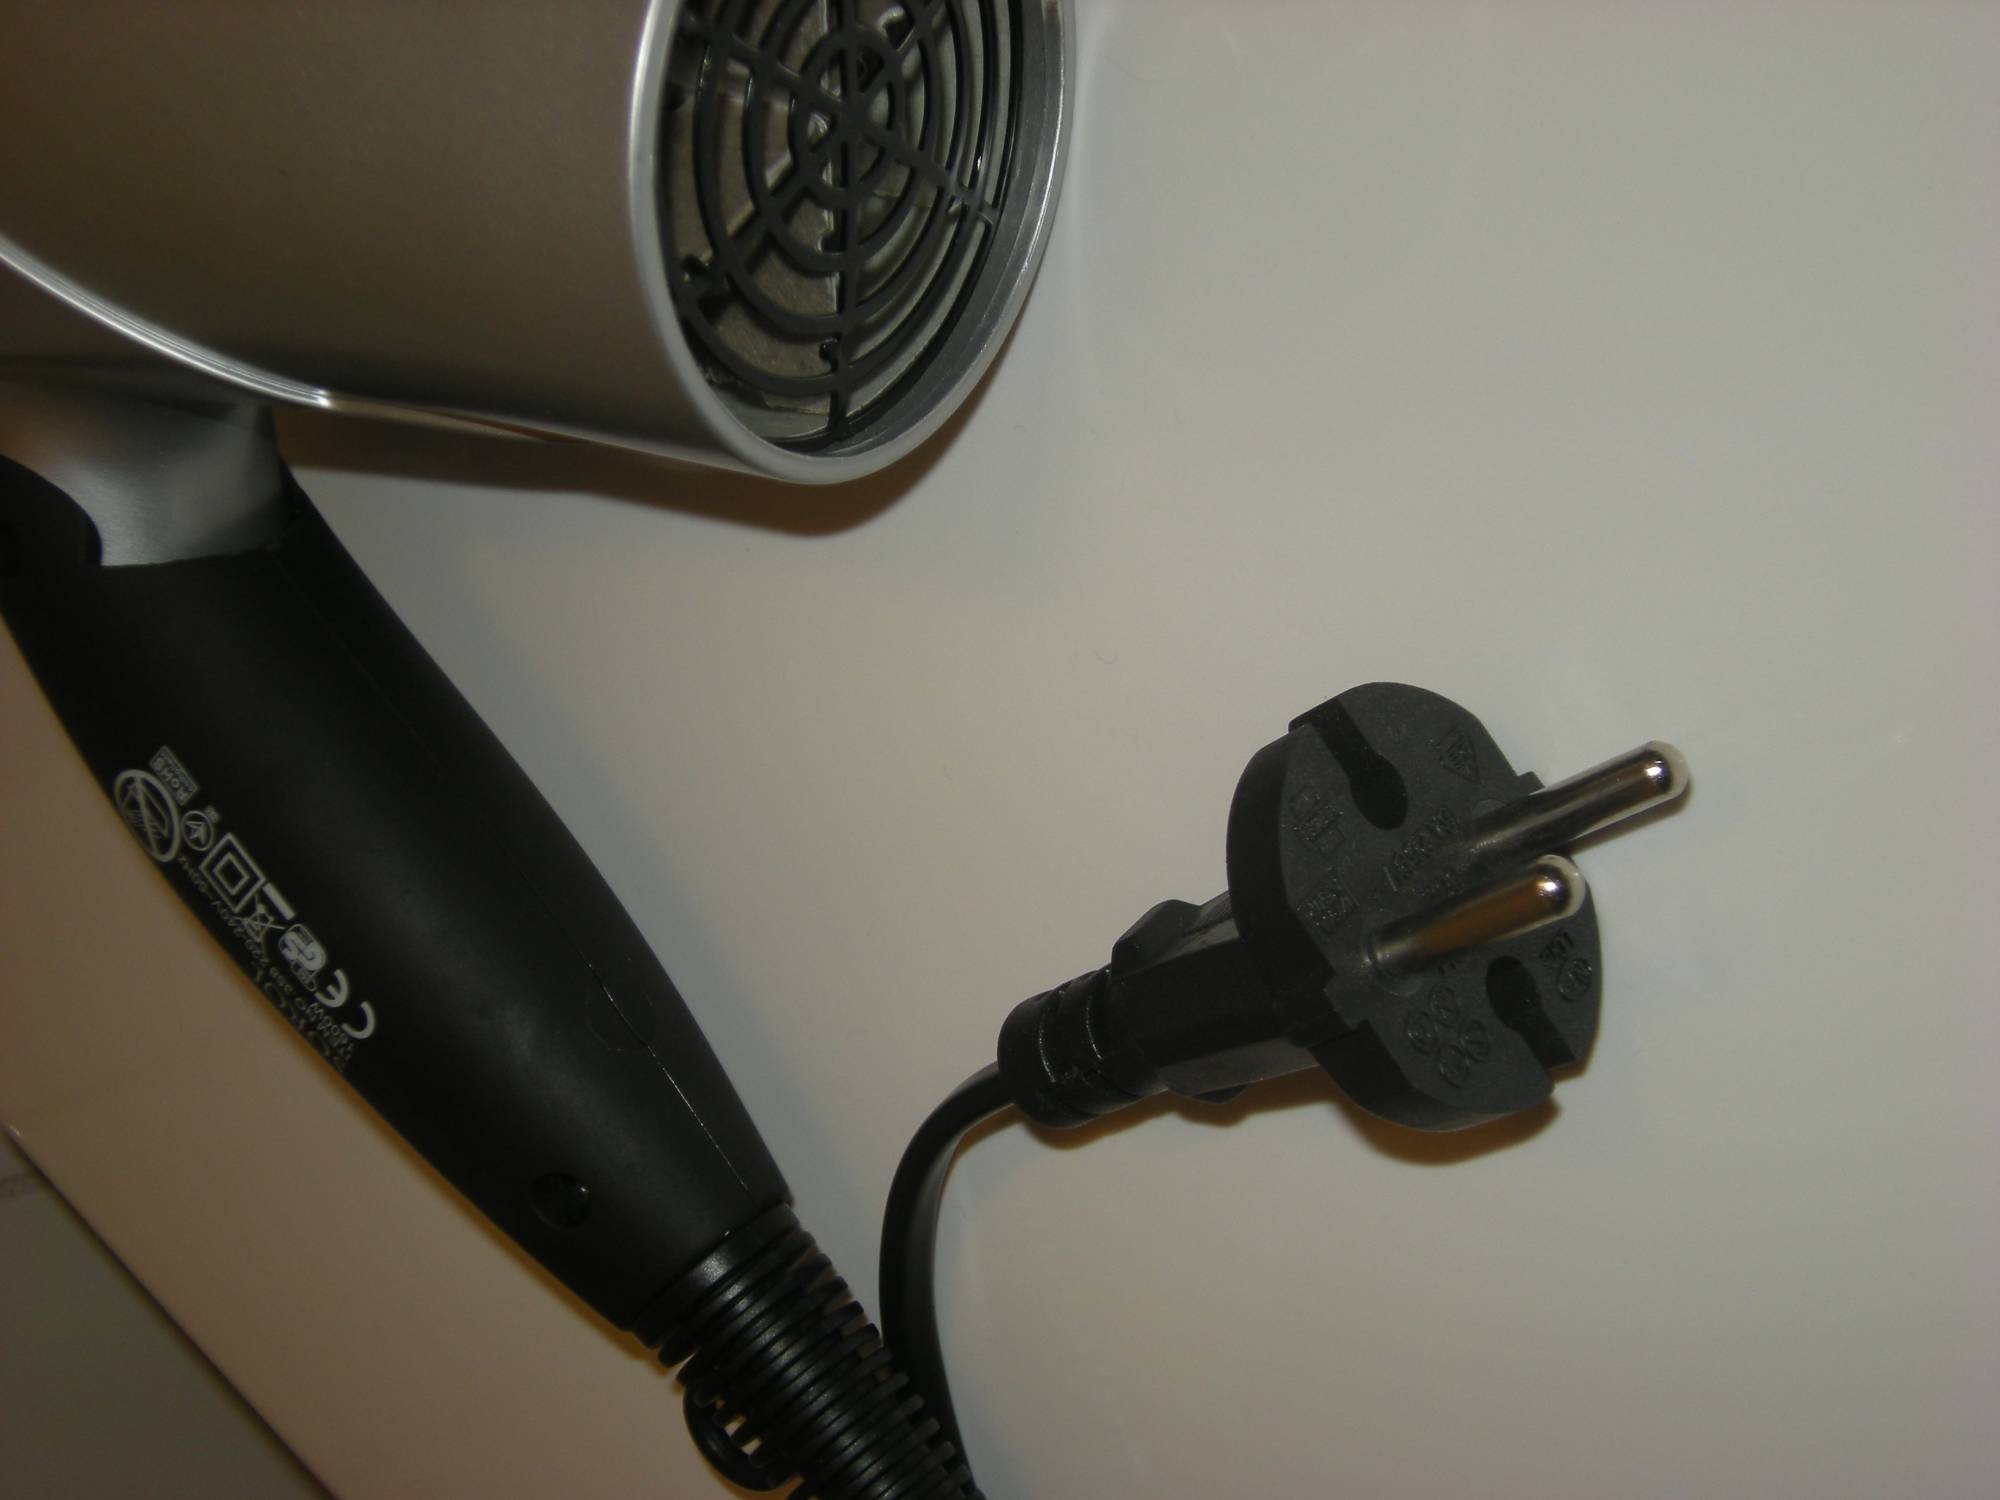 Disney Dream - Hair Dryer Plug